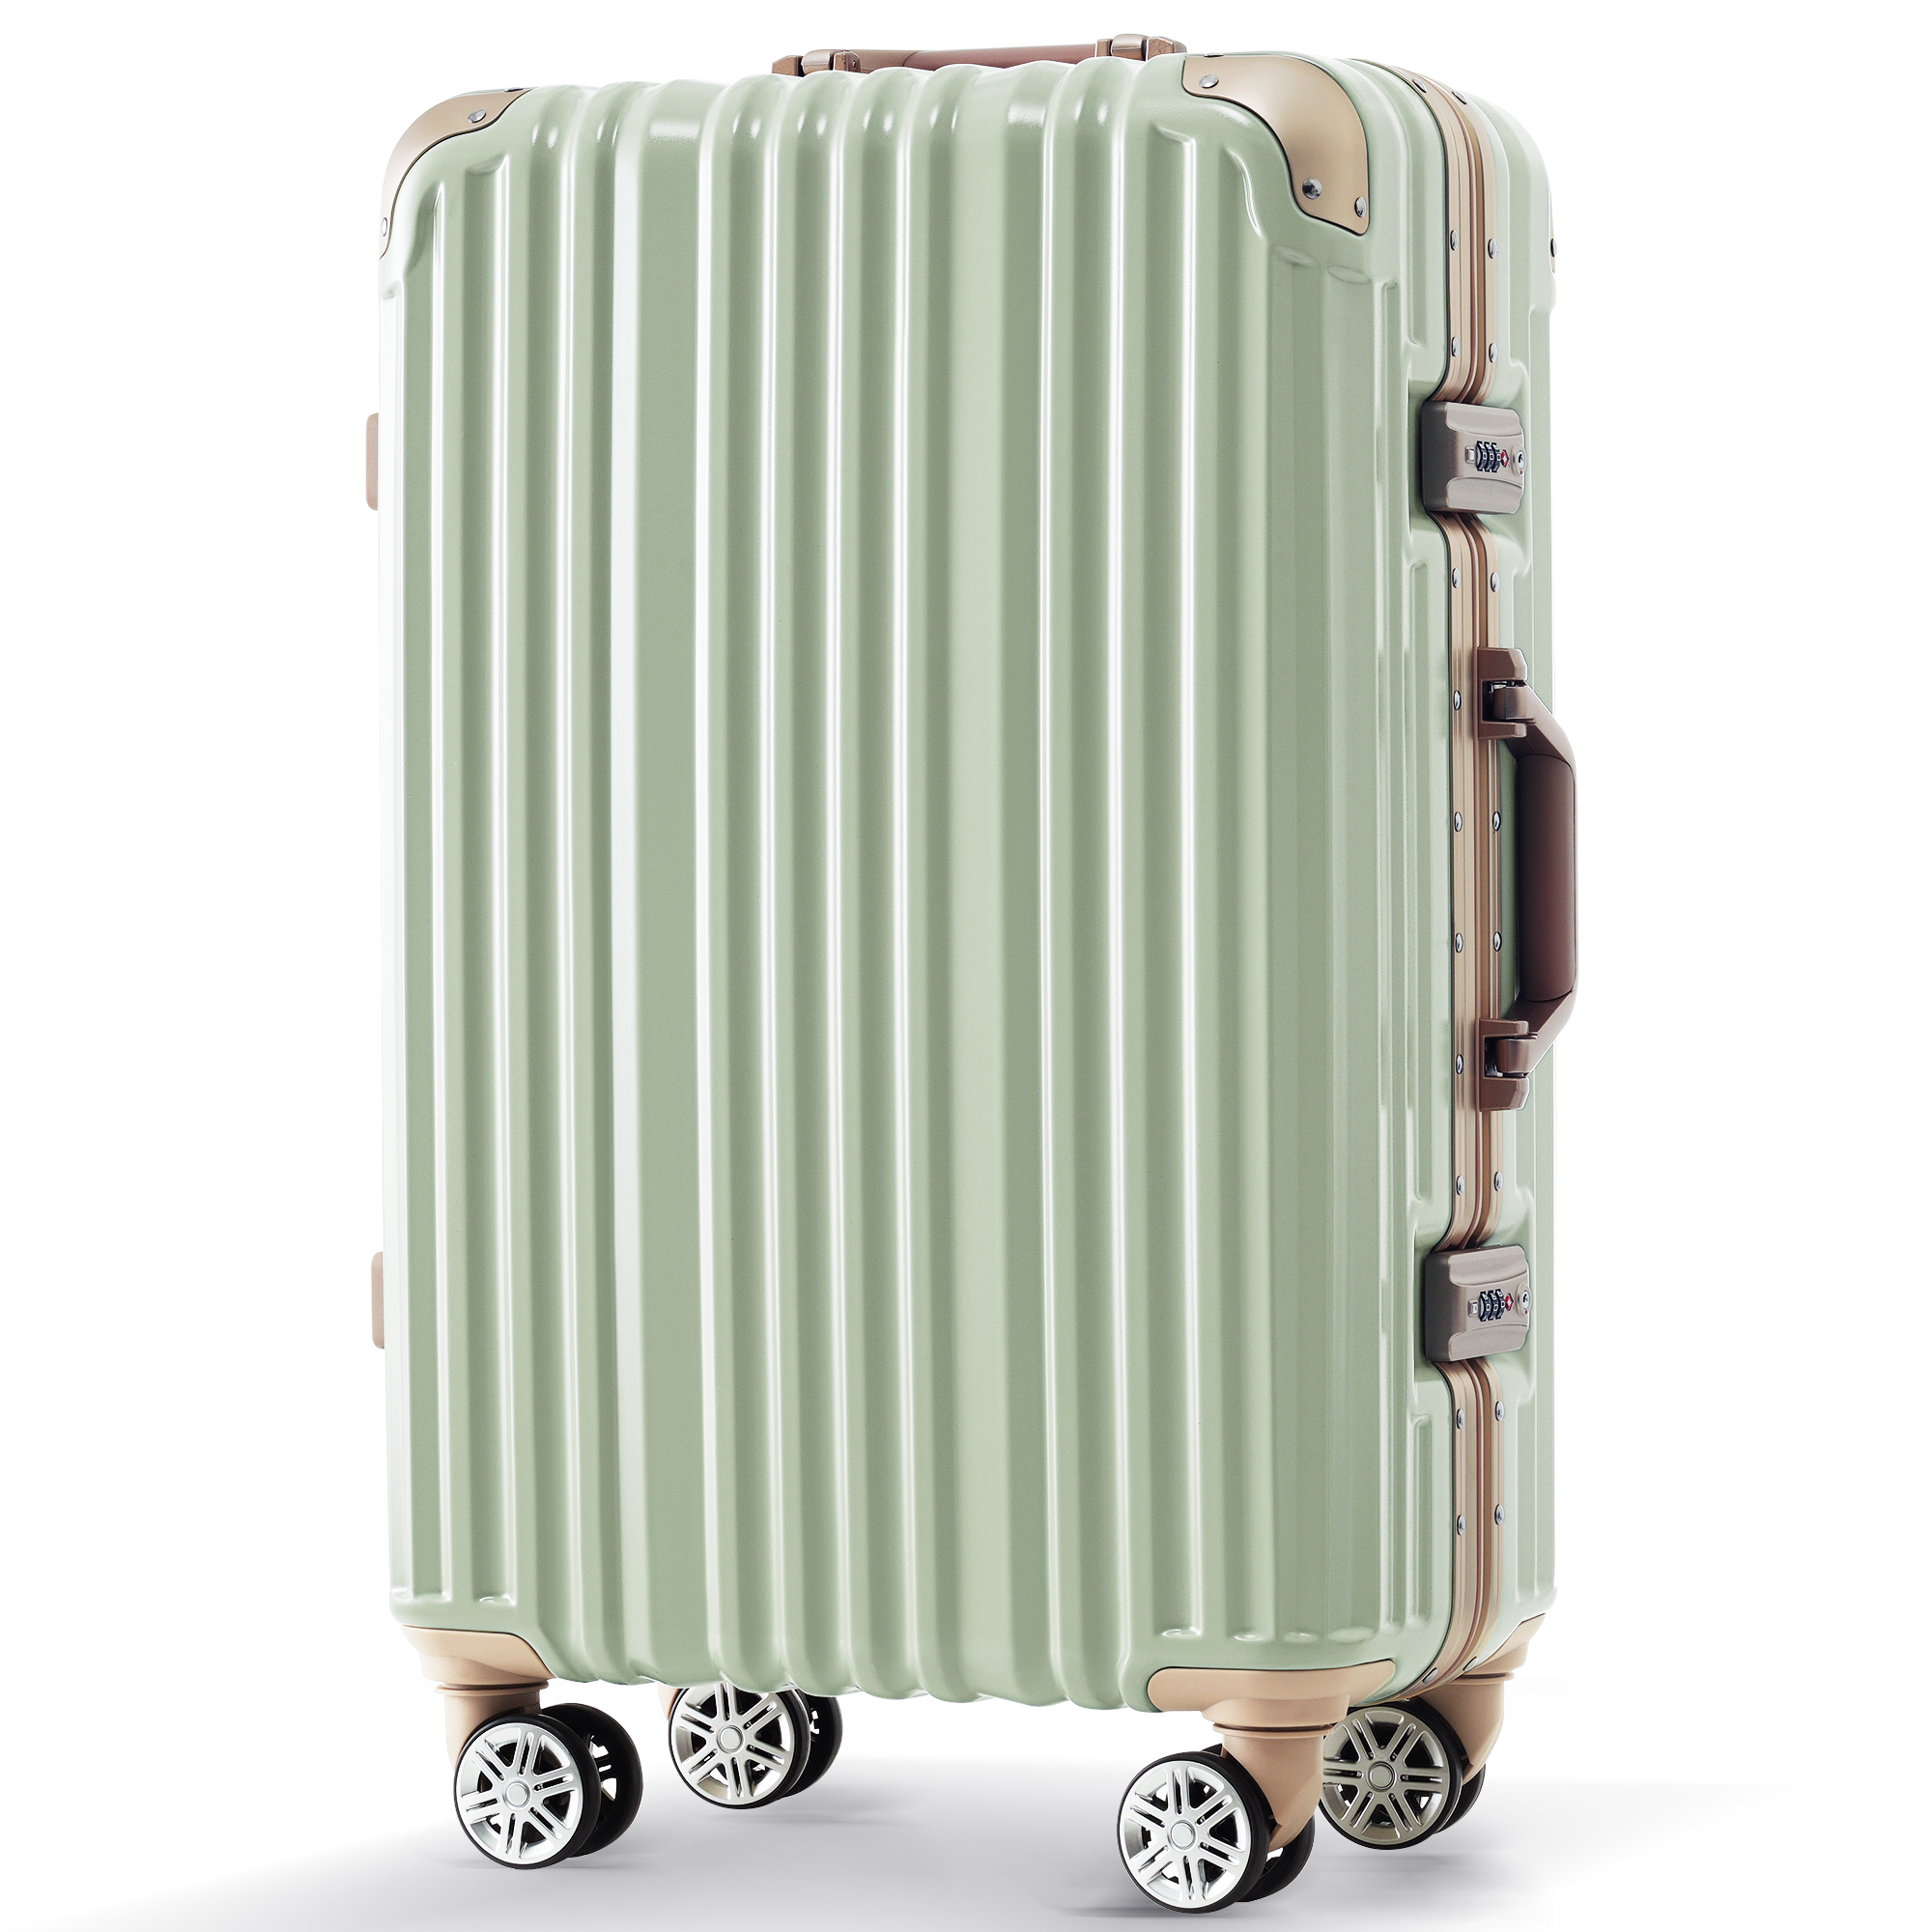 予約販売 スーツケース 機内持ち込み キャリーバッグ キャリーケース Sサイズ かわいい フレーム 一年間保証 TSAロック搭載 軽量 1日 2日  小型 suitcase